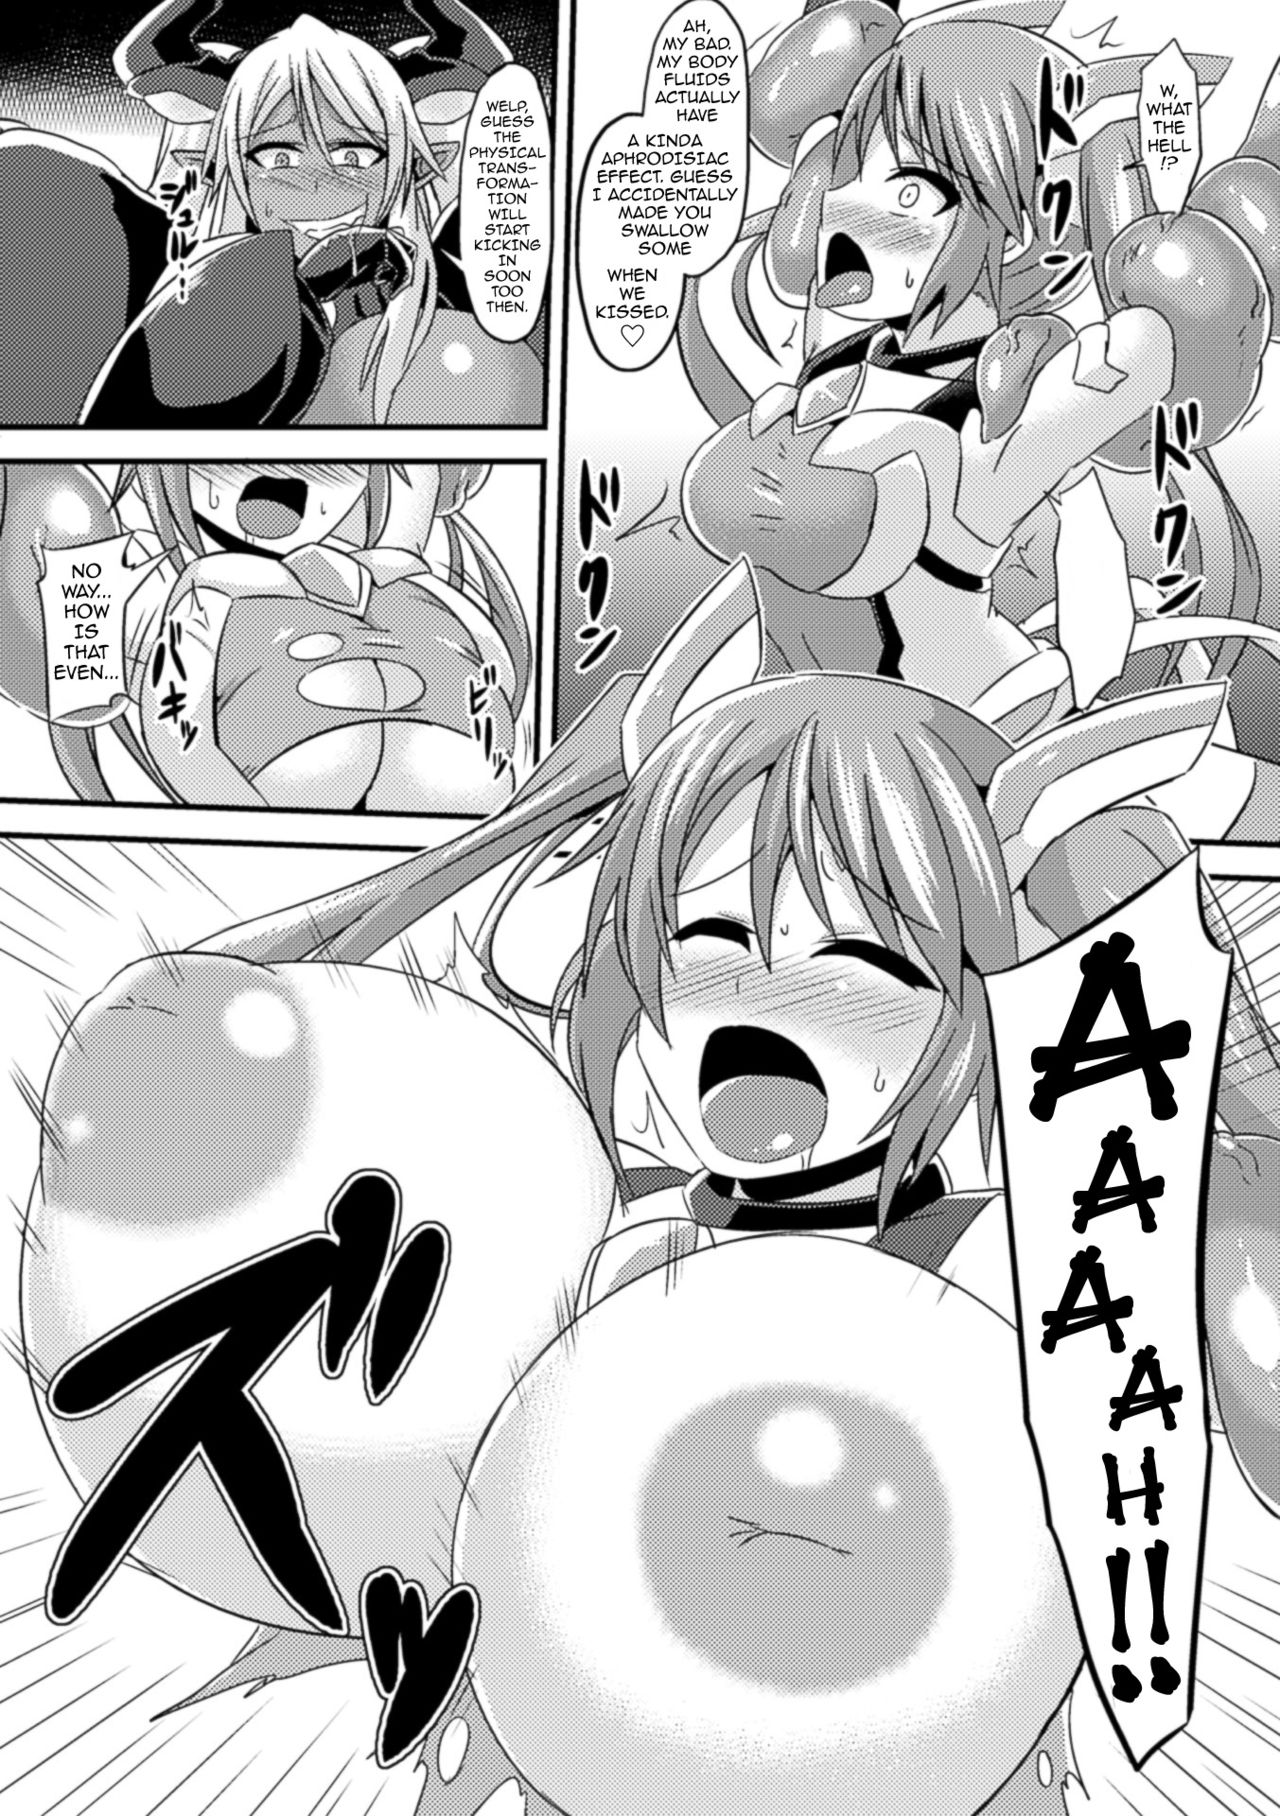 [Ikameshi] Tiana vs Dark Reiz (2D Comic Magazine Nipple Fuck de Acme Jigoku! Vol. 1)  [English] {darknight} [Digital] [イカめし] ティアナ VS ダークレイズ (二次元コミックマガジン ニプルファックでアクメ地獄! Vol.1) [英訳] [DL版]